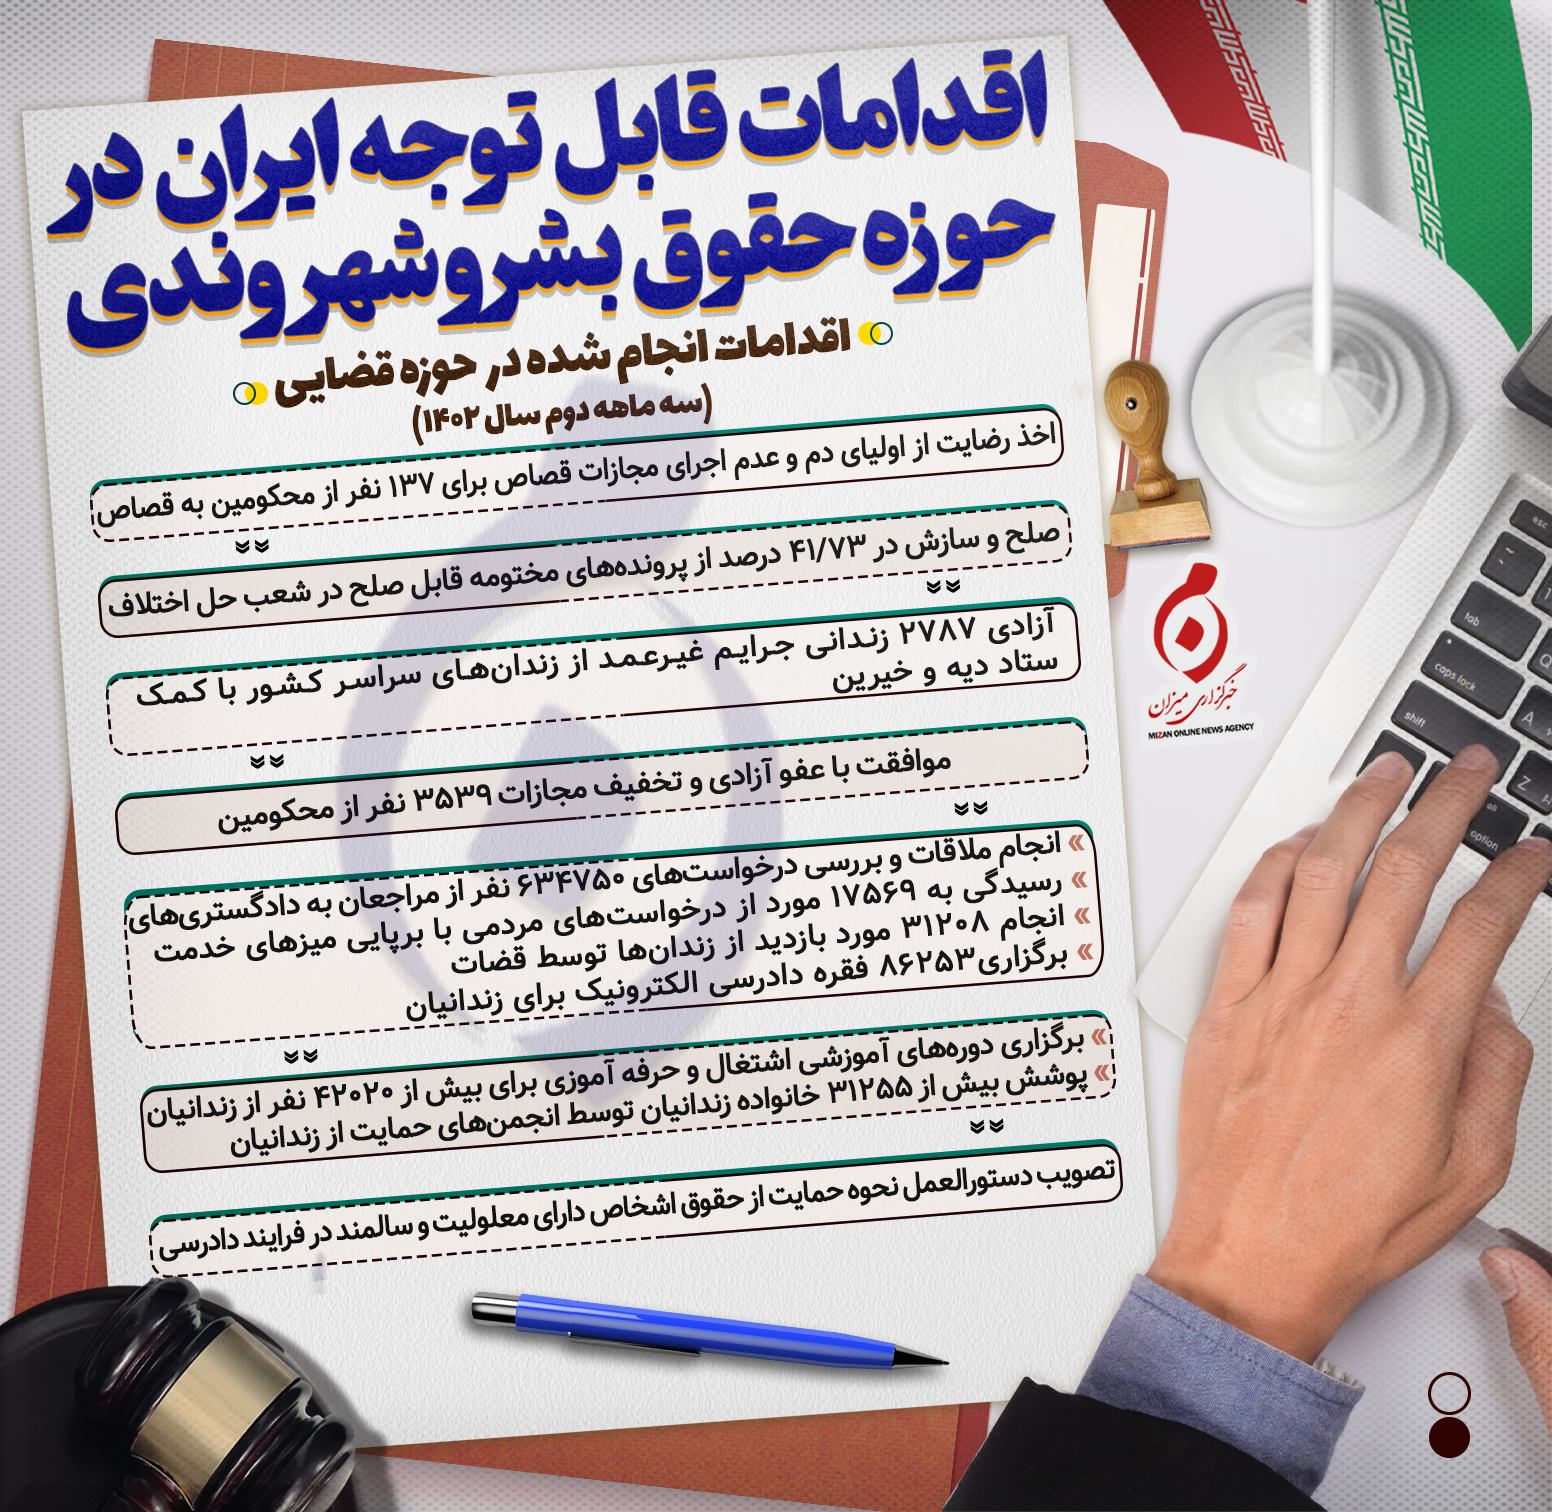 اینفوگرافیک | اقدامات قابل توجه ایران در حوزه حقوق بشر و شهروندی